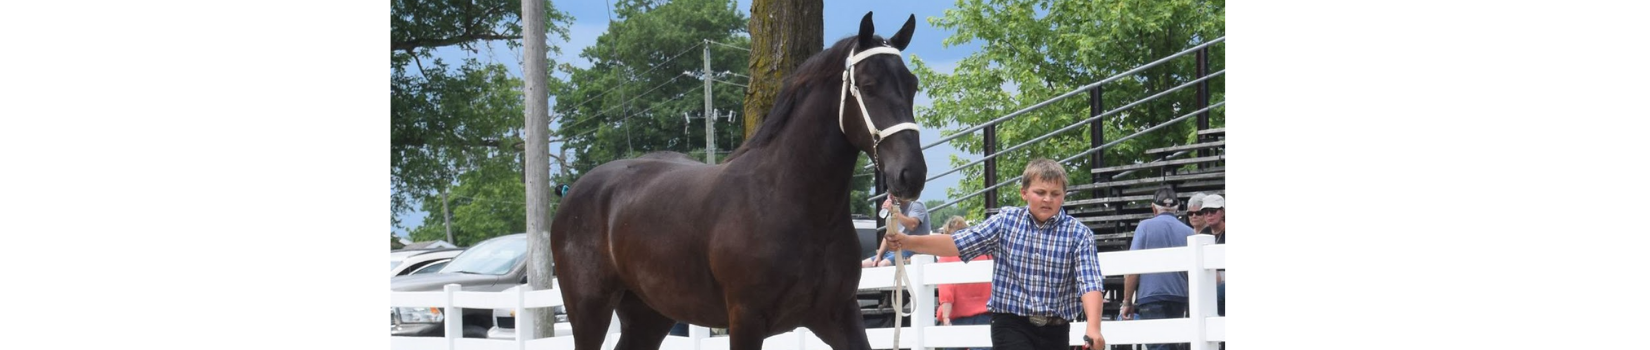 Ontario Percheron Horse Association Silent Auction